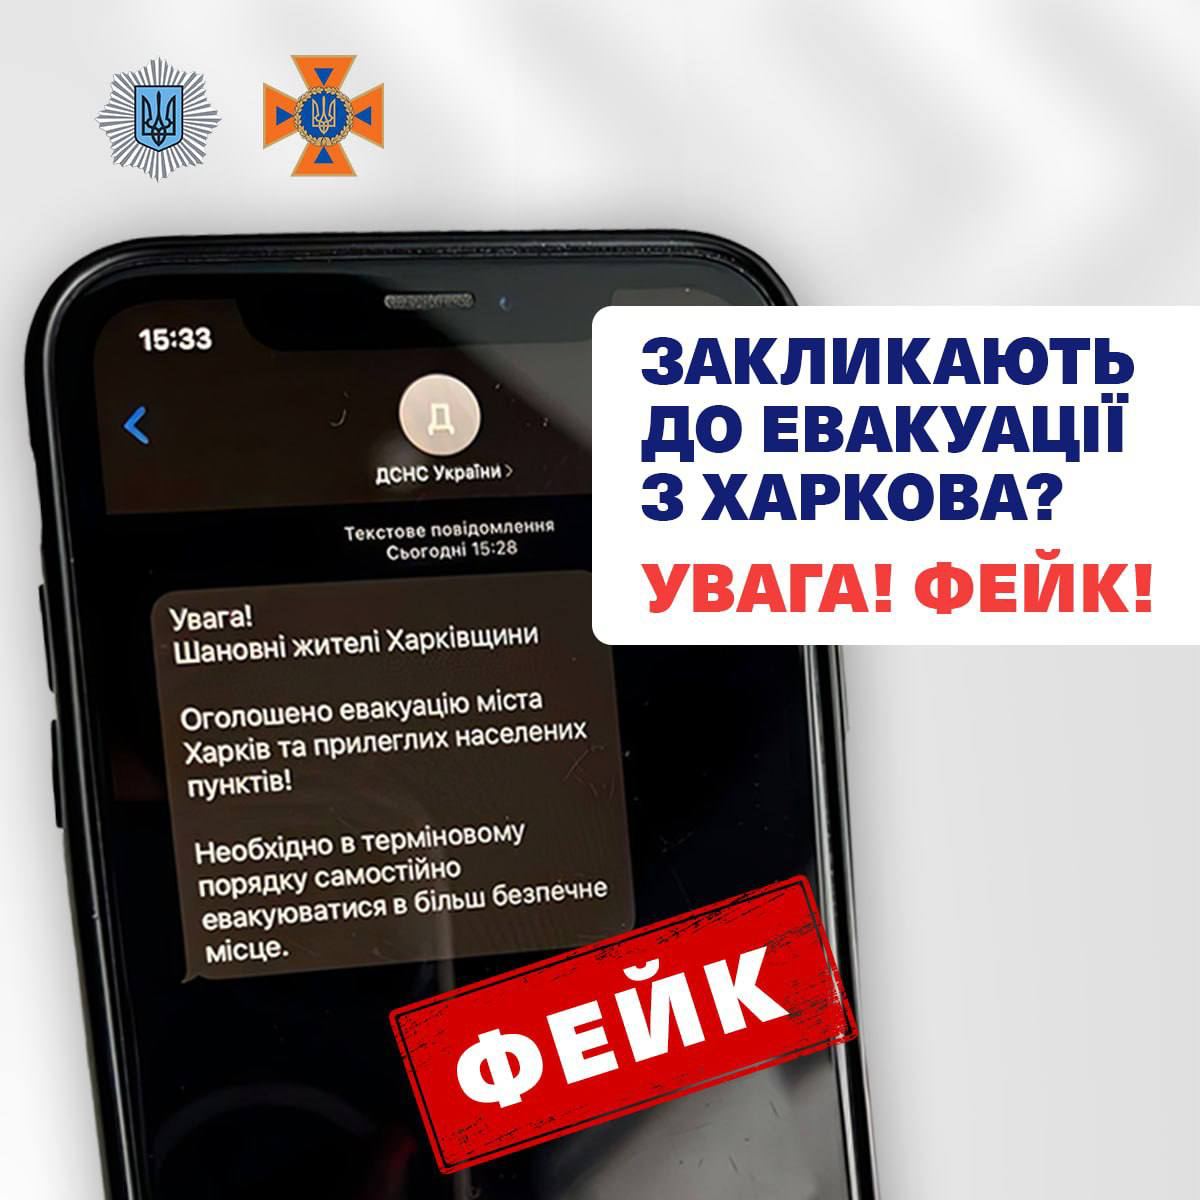 “ДСНС закликає жителів Харкова евакуюватися” – фейк пропагандистів